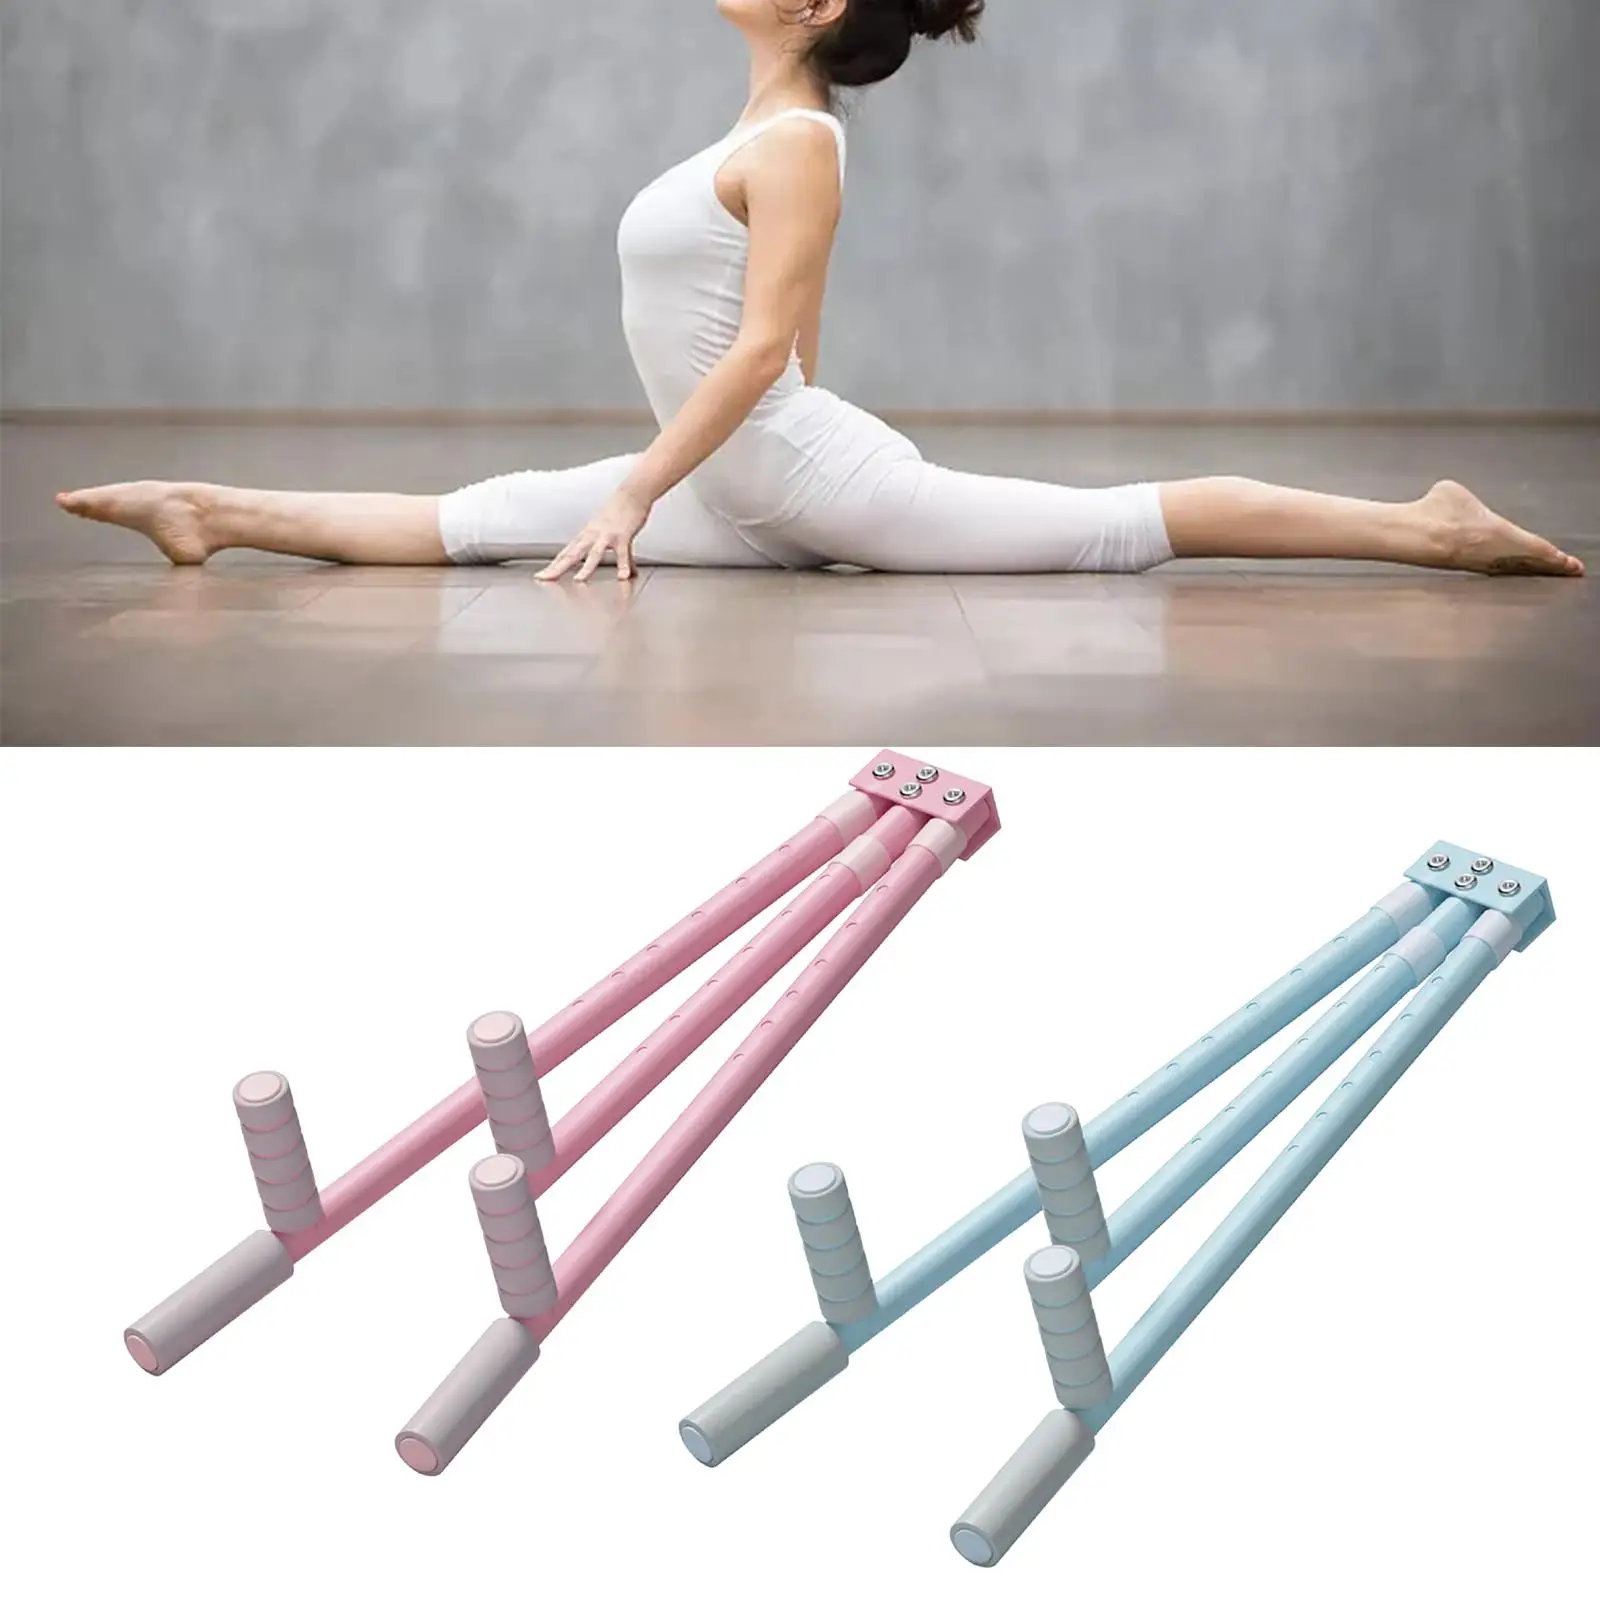 3 Bar Leg Device Leg Flexibility Stretching Machine Exercise Equipment Leg Split Spreader for Ballets Yoga Sports Fitness